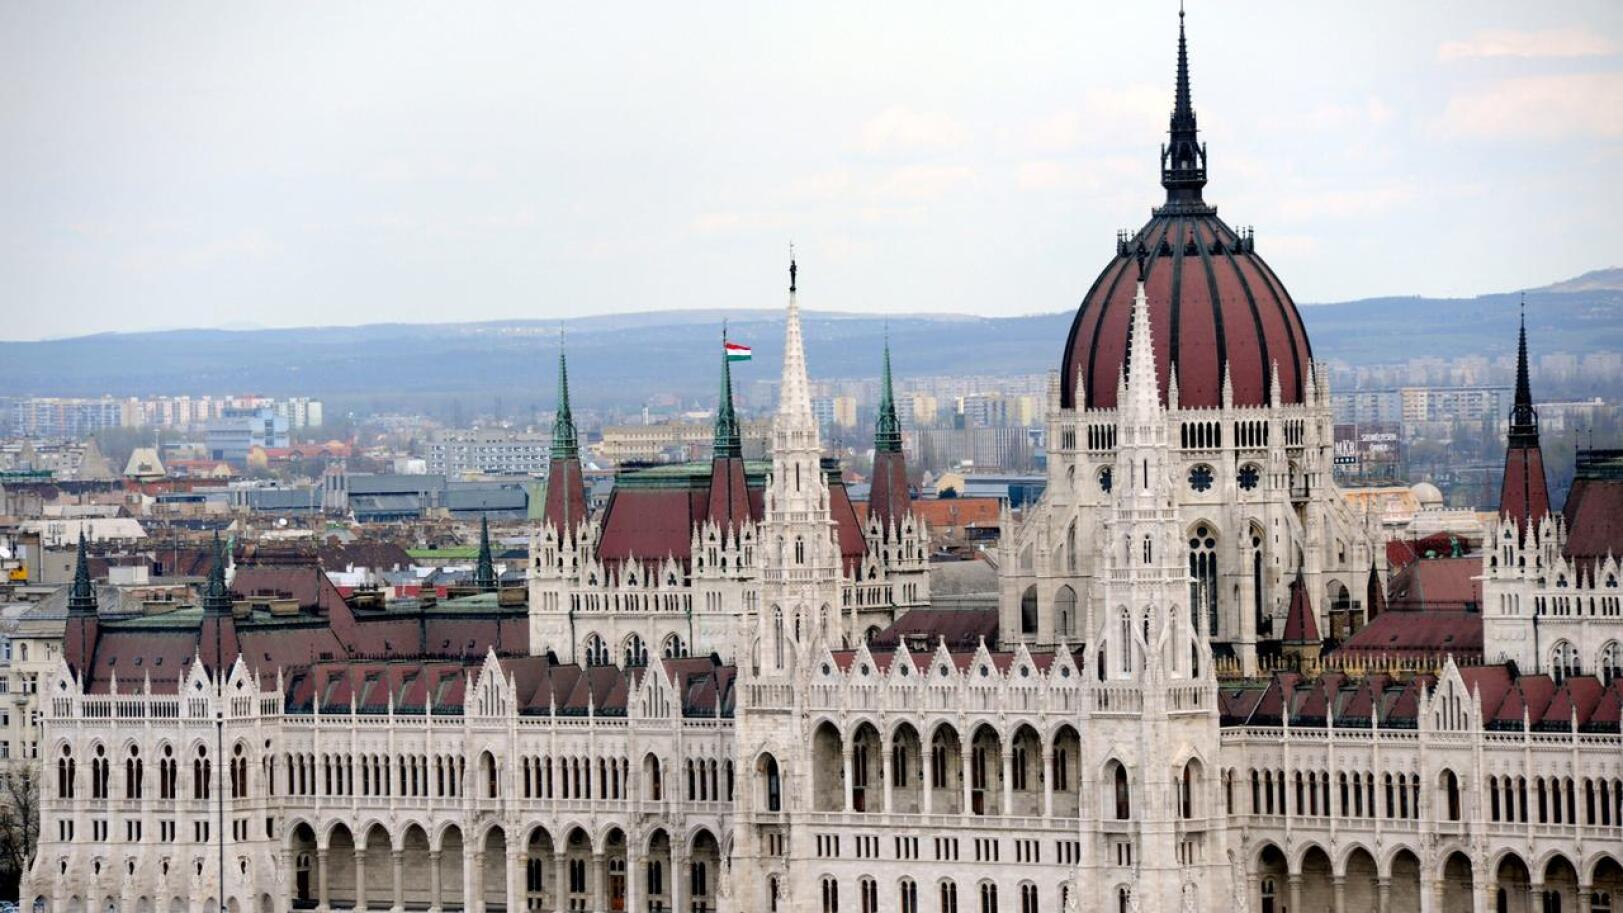 Unkarin parlamentti äänestää Suomen Nato-jäsenyydestä vielä tässä kuussa.